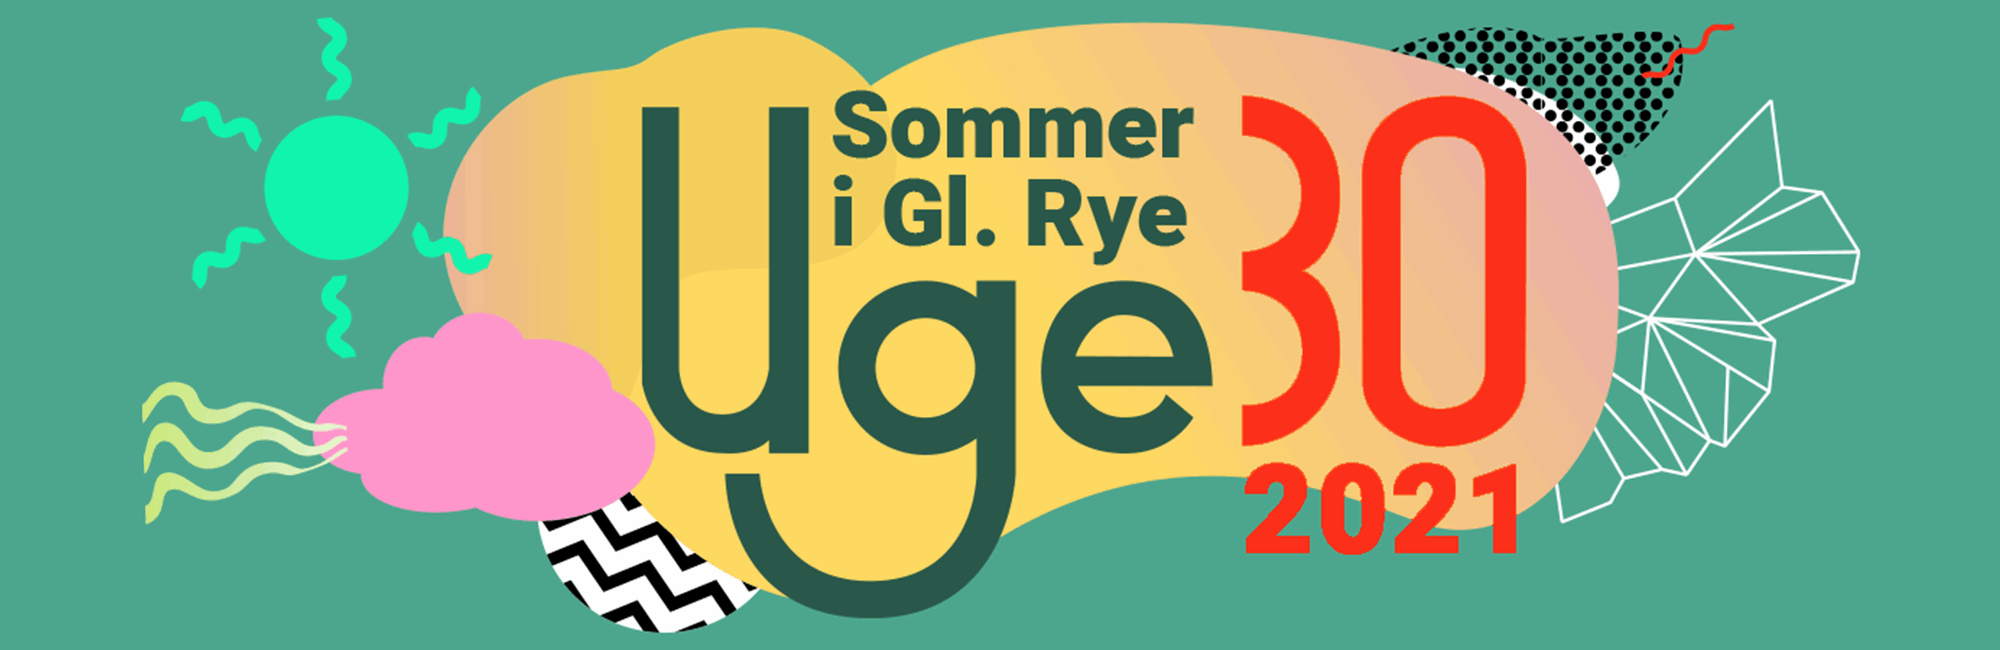 uge30-banner-2021.png